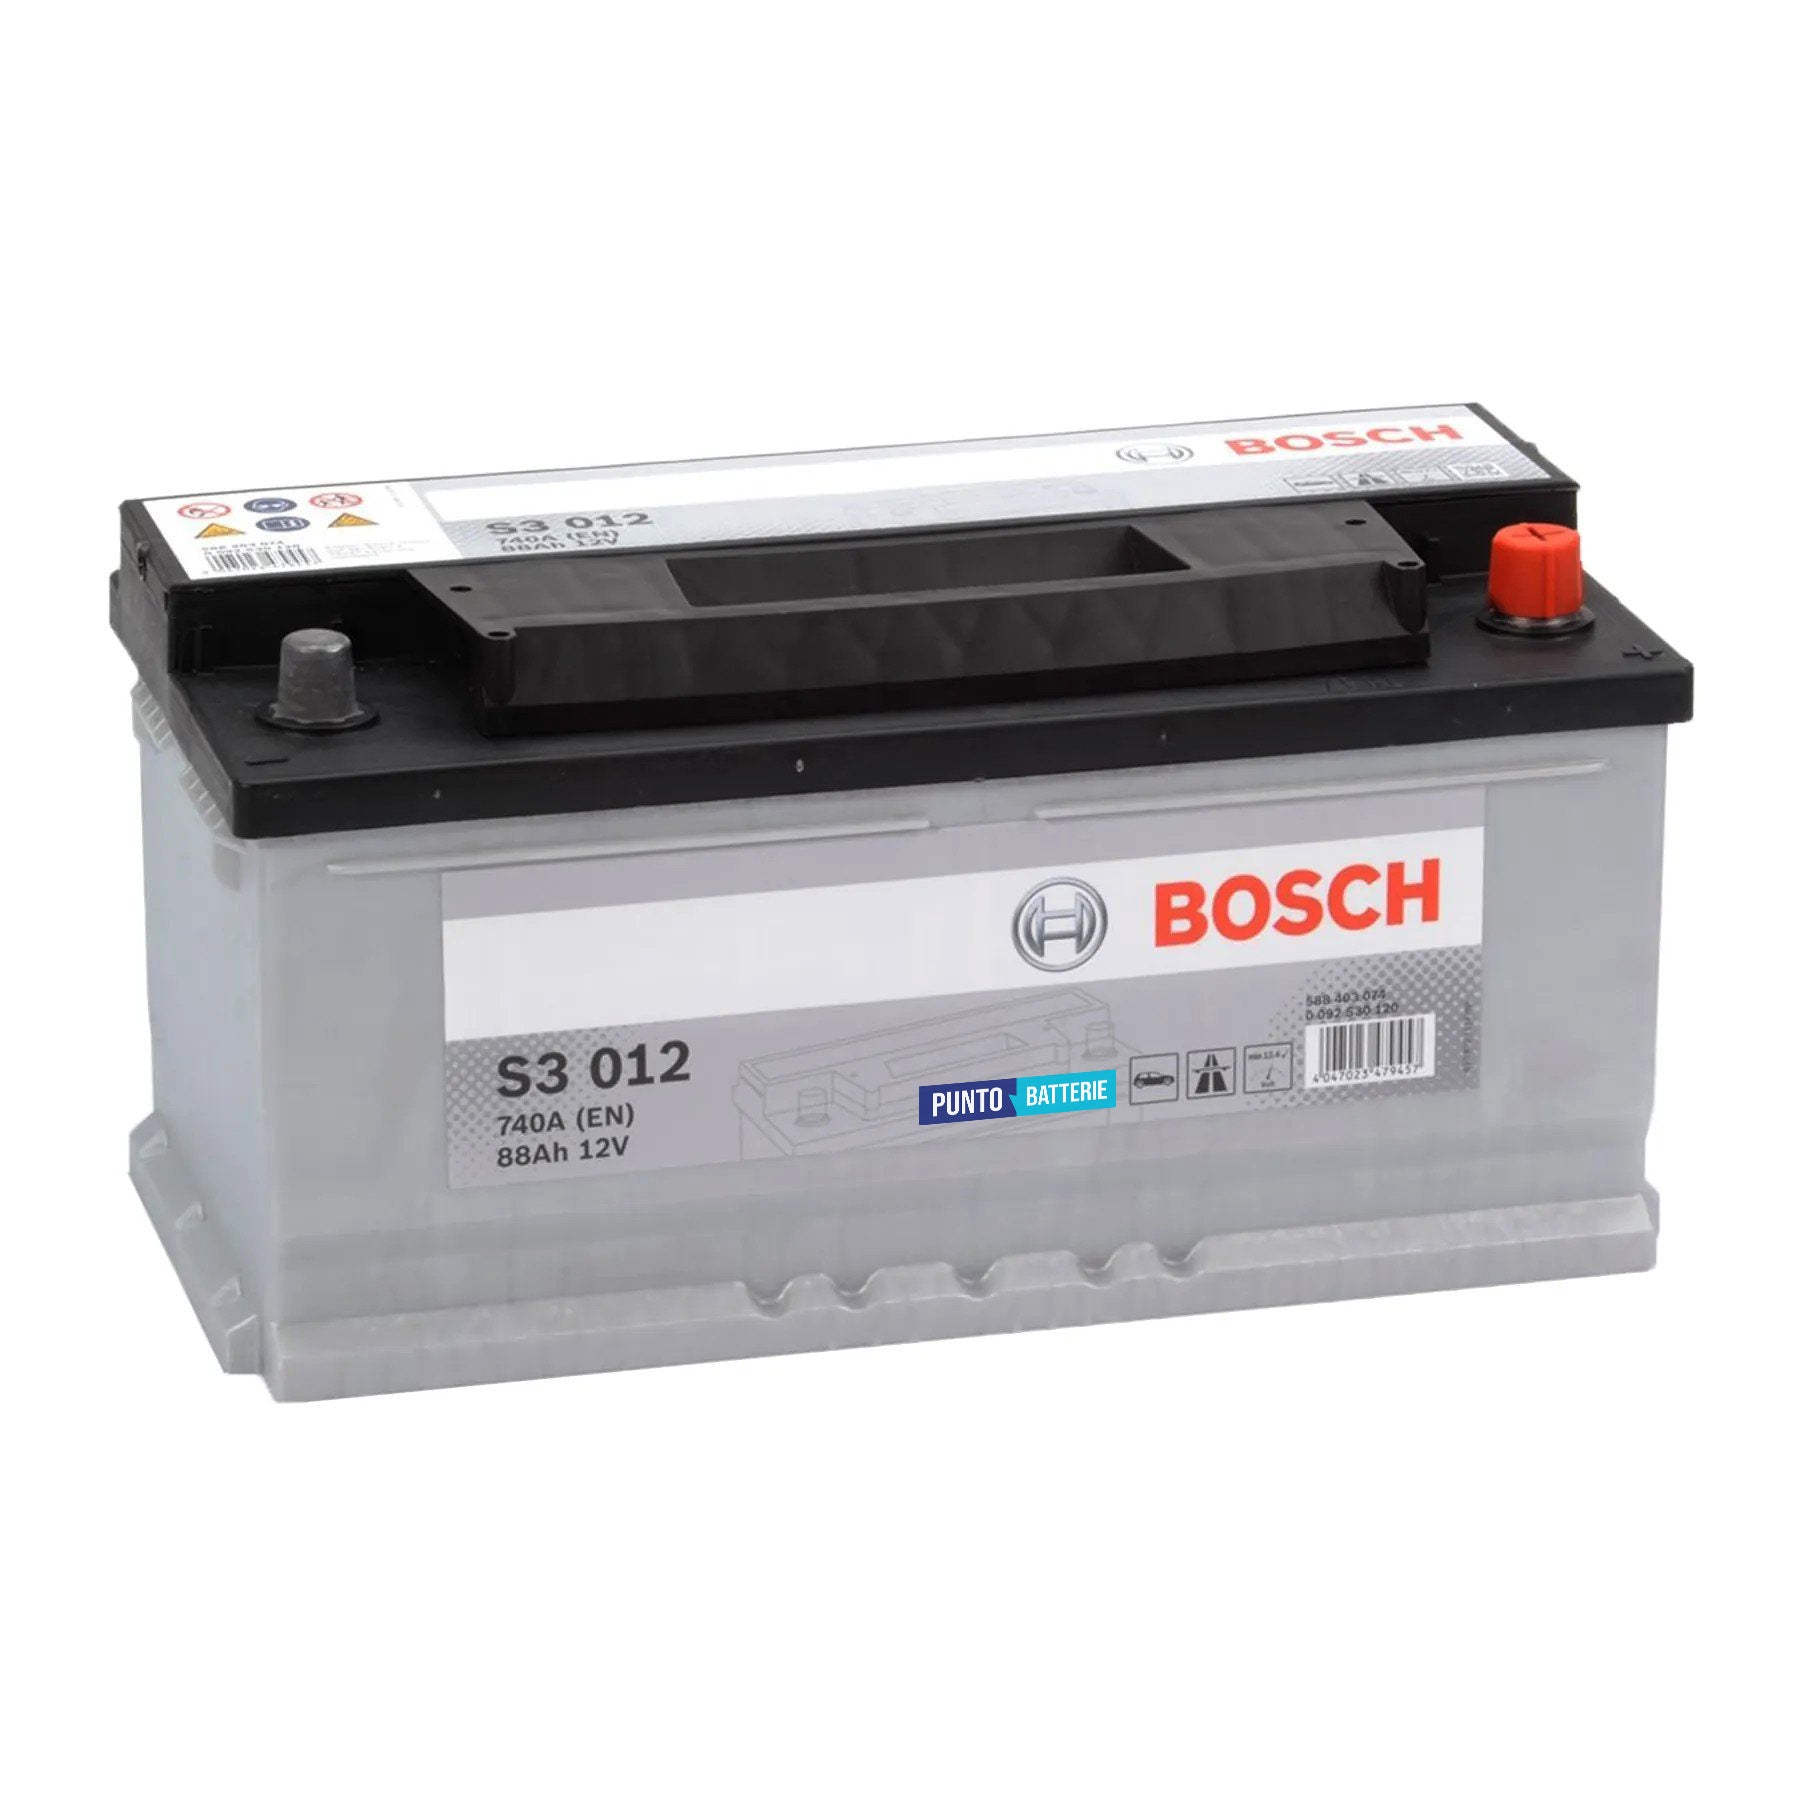 Batteria originale Bosch S3 S3 012, dimensioni 353 x 175 x 175, polo positivo a destra, 12 volt, 88 amperora, 740 ampere. Batteria per auto e veicoli leggeri.